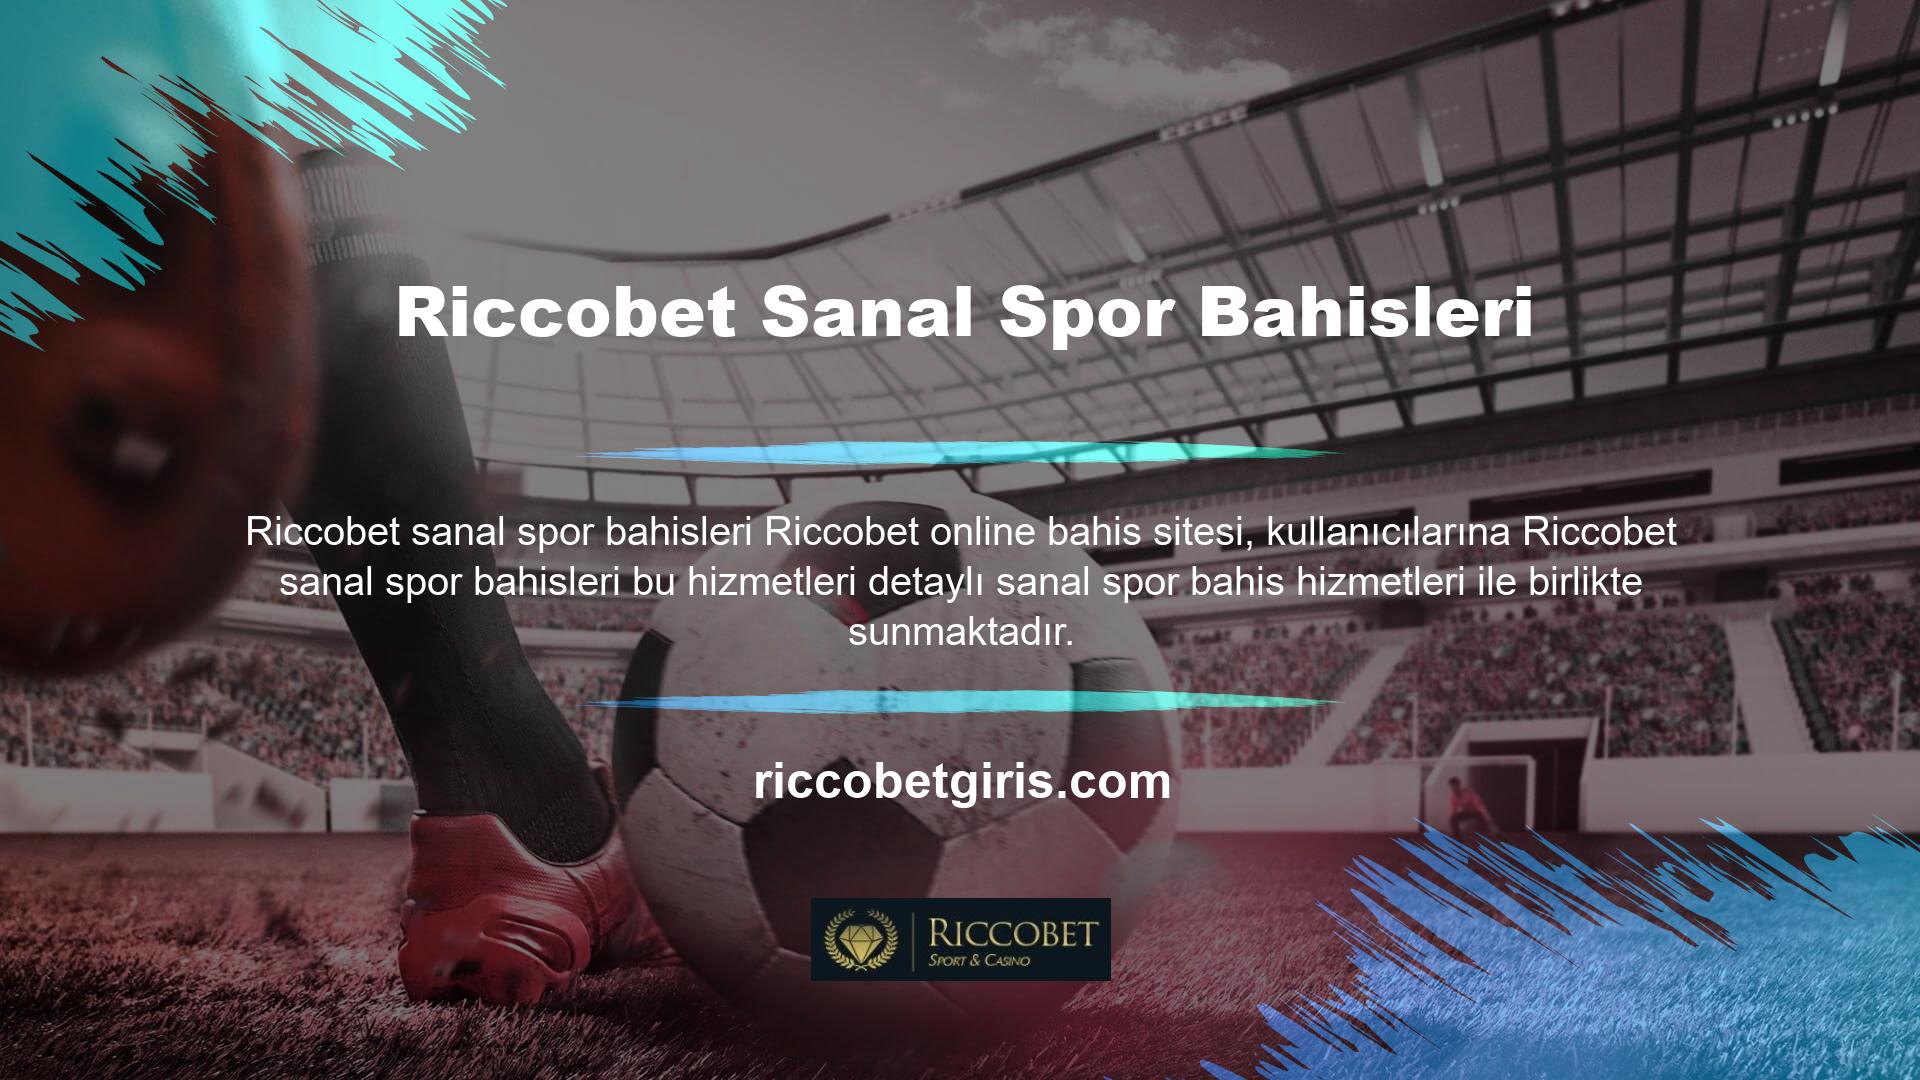 Bu nedenle Riccobet sanal spor bahisleri sanal spor bahisleri hizmeti, diğer tüm sanal spor bahisleri için etkili bir tanımdır